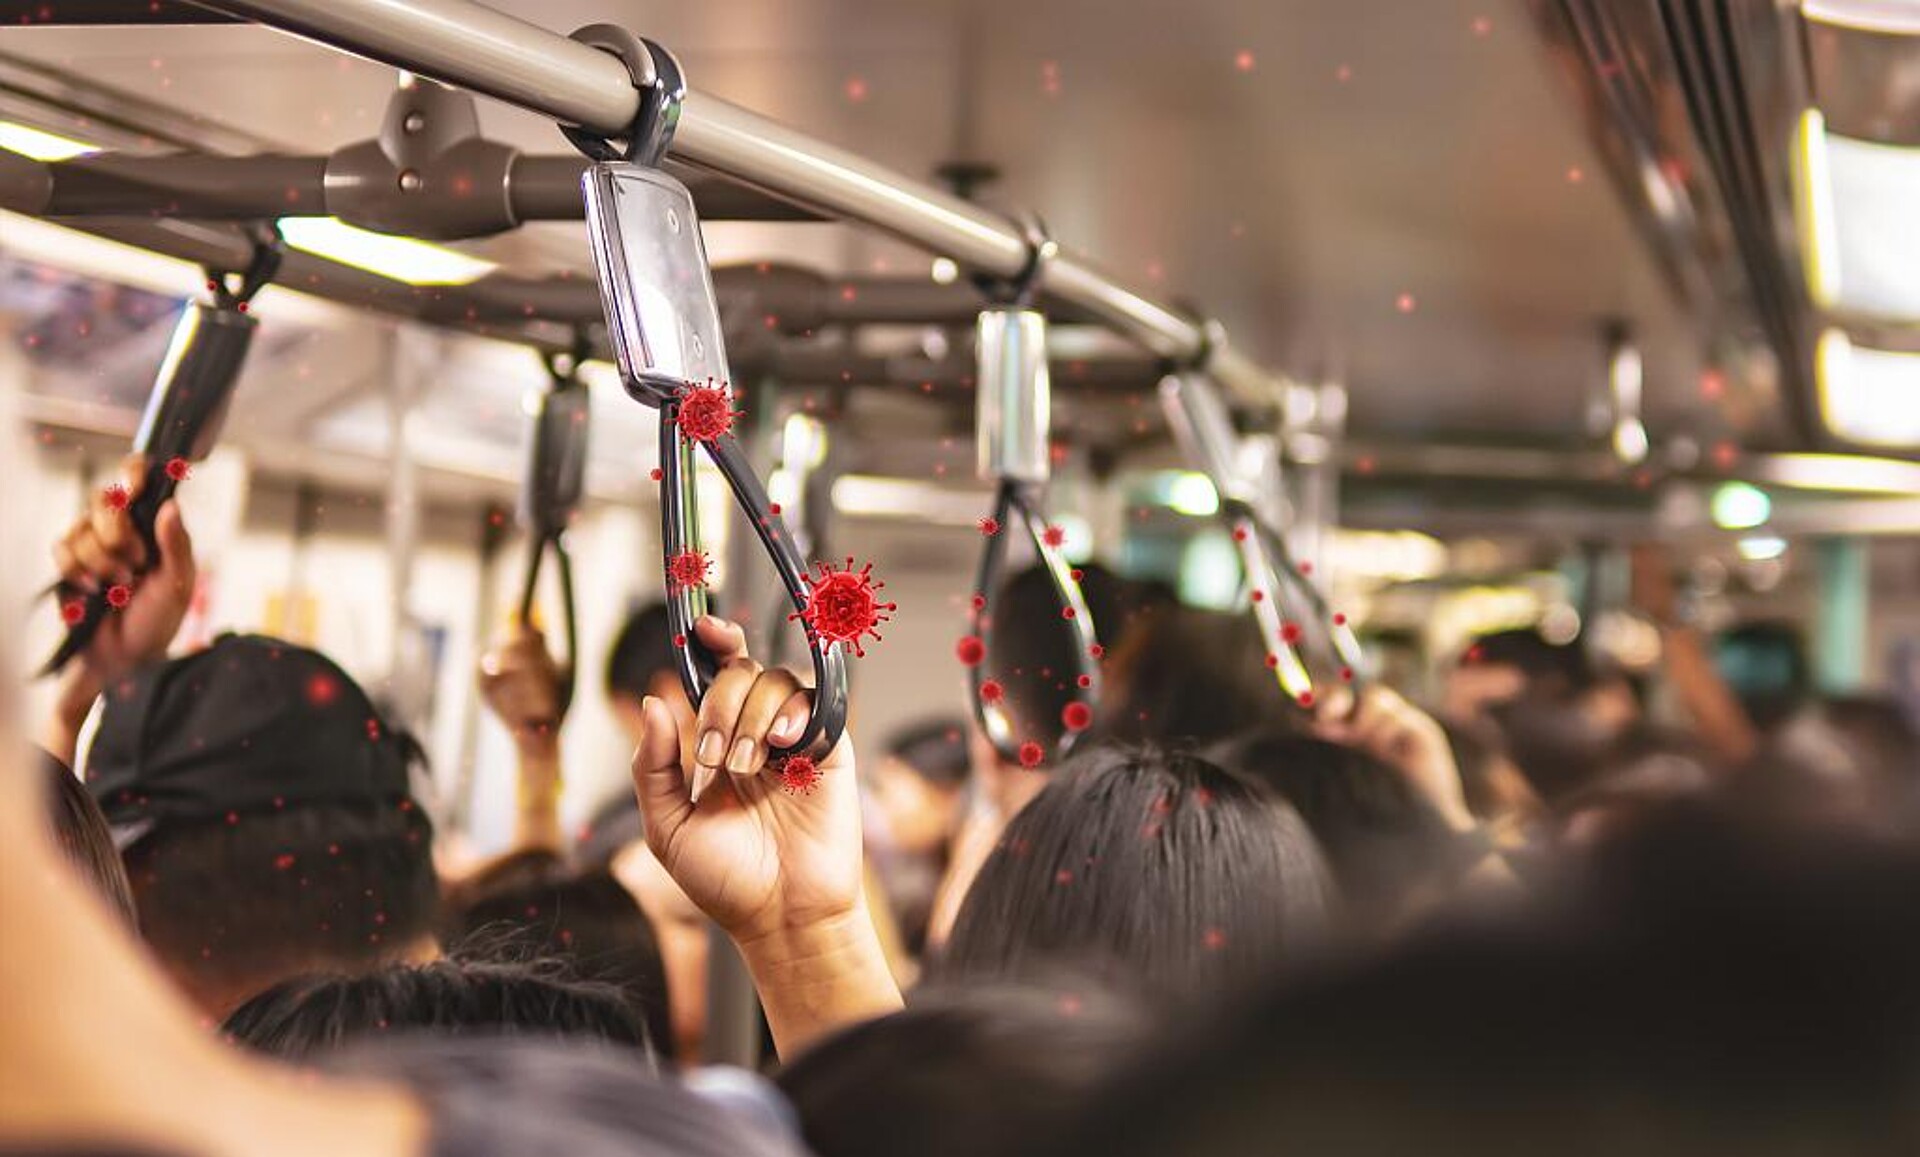 Griffe in öffentlichen Verkehrsmitteln sind ein mögliches Anwendungsgebiet des antimikrobiellen Masterbatches. (Foto: wachiwit - stock.adobe.com)